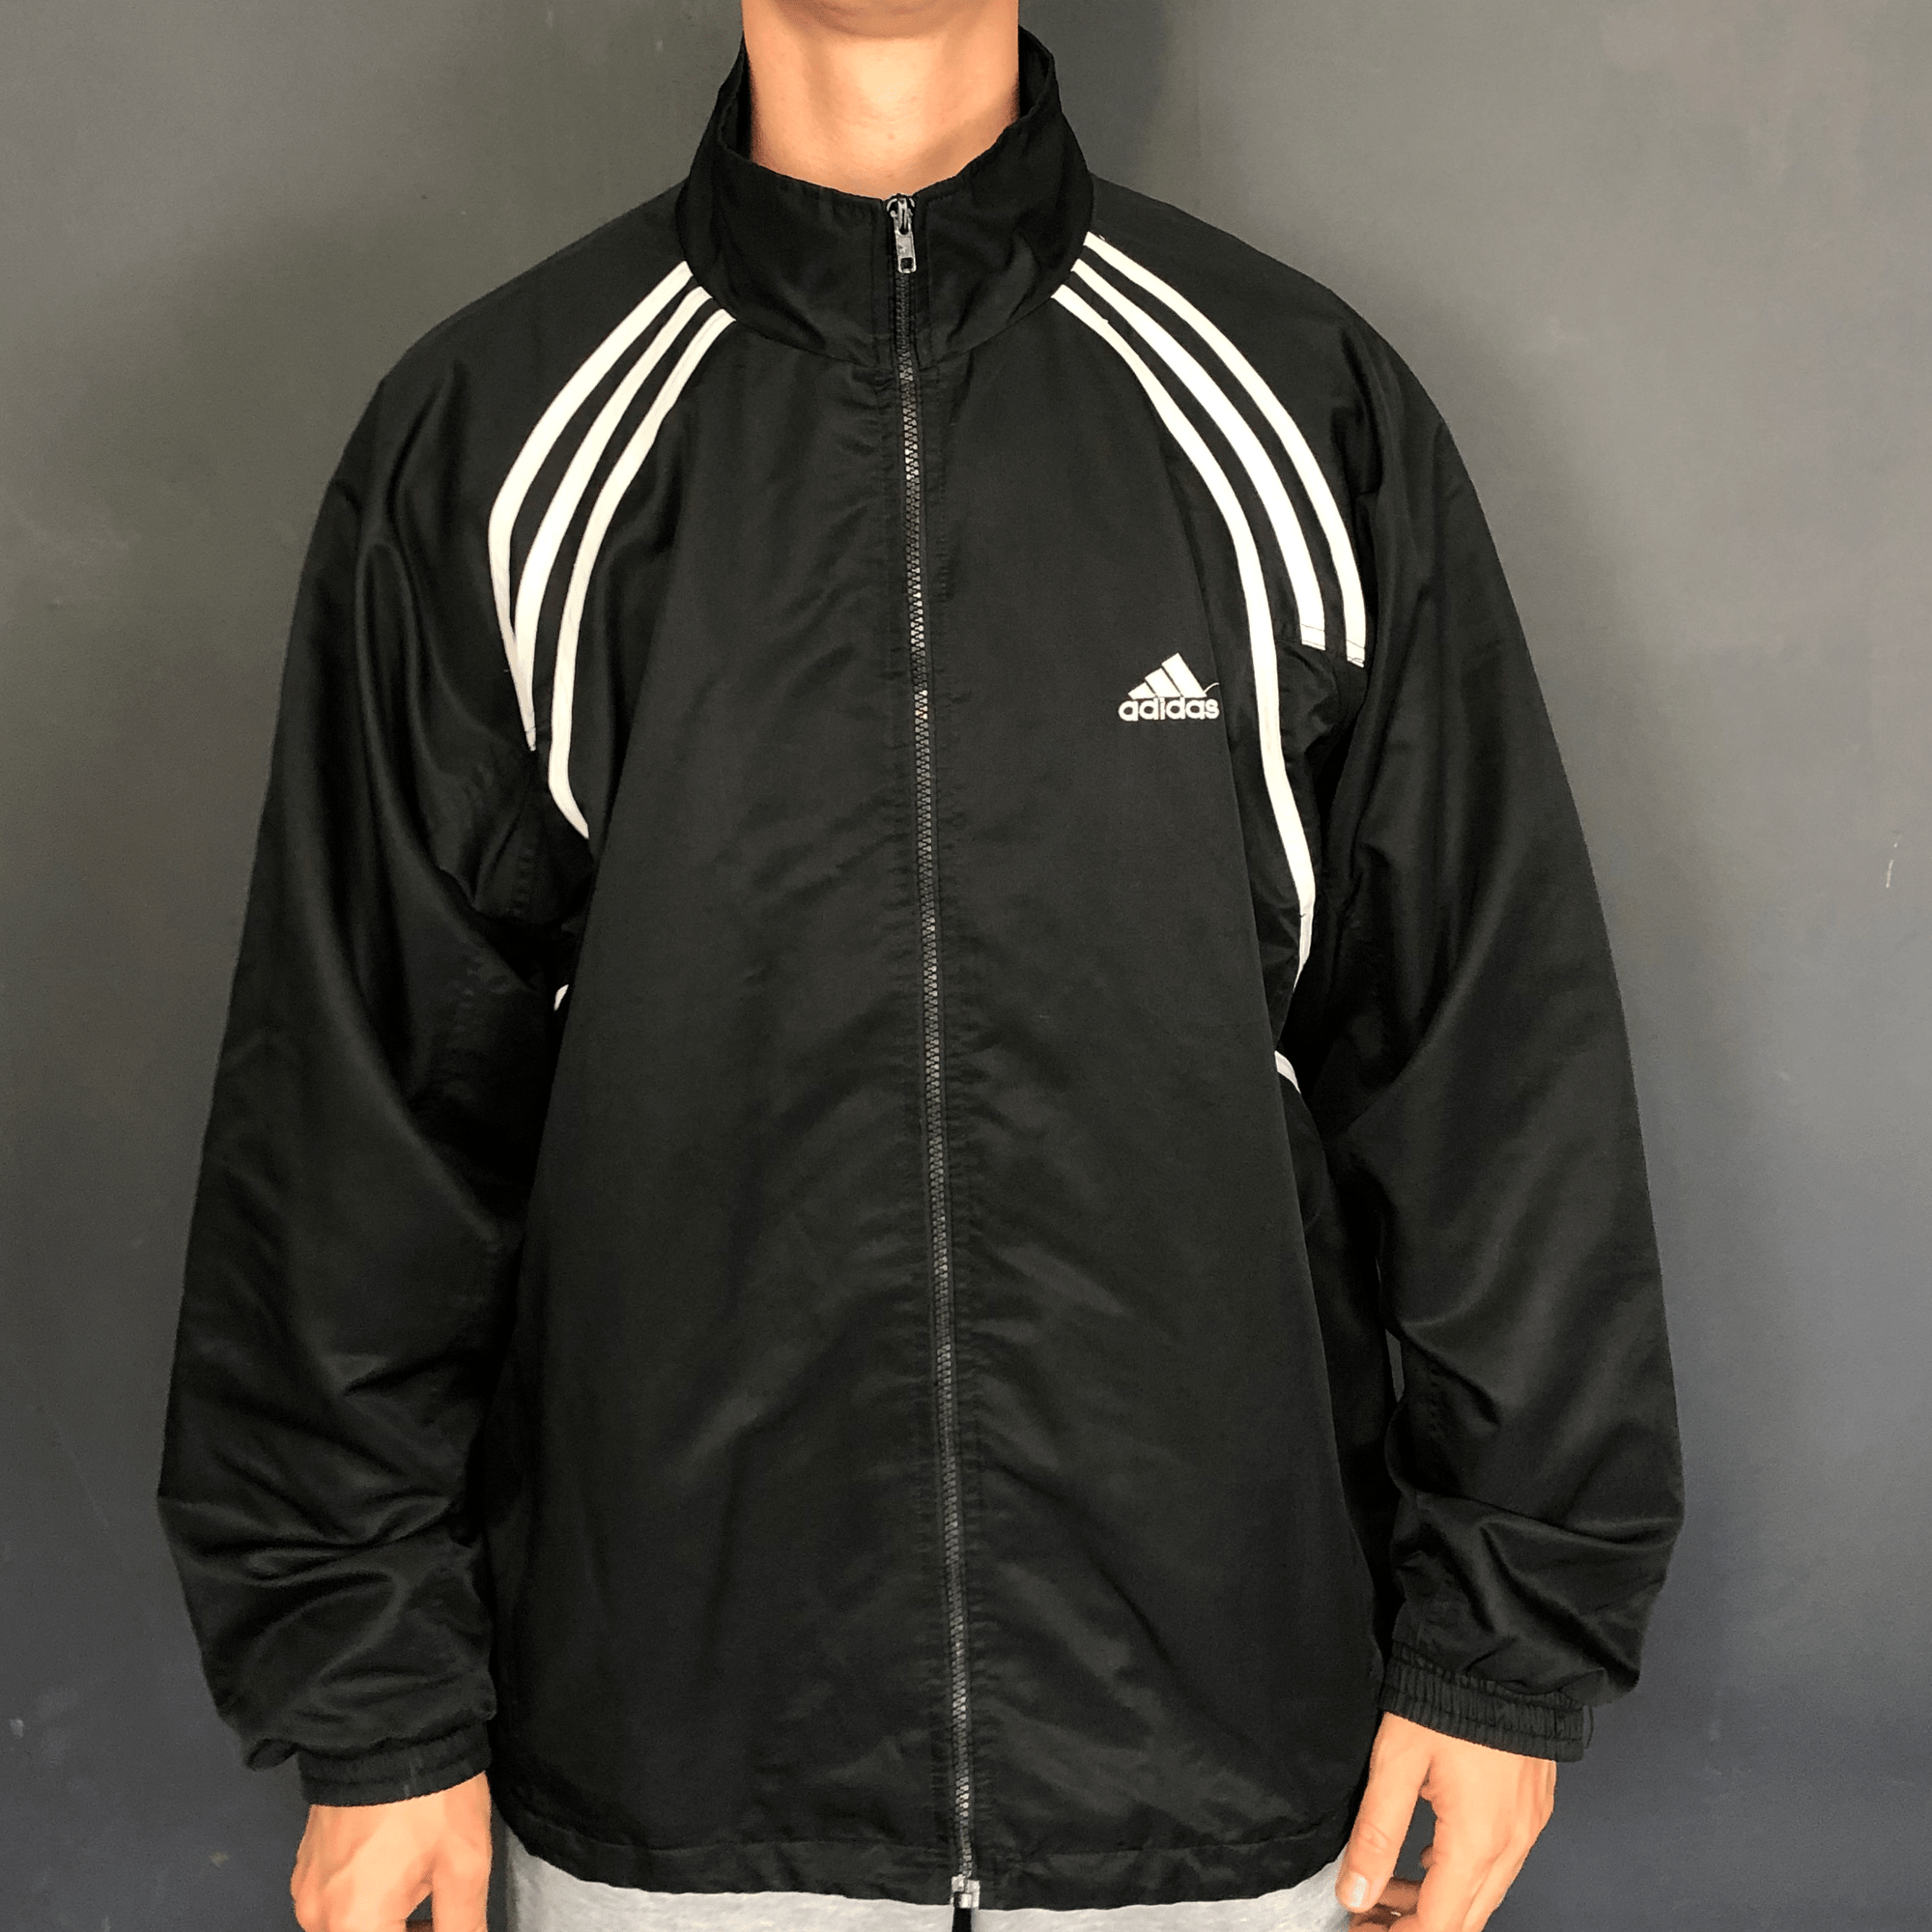 Vintage Adidas Training Track Jacket - Large - Vintique Clothing